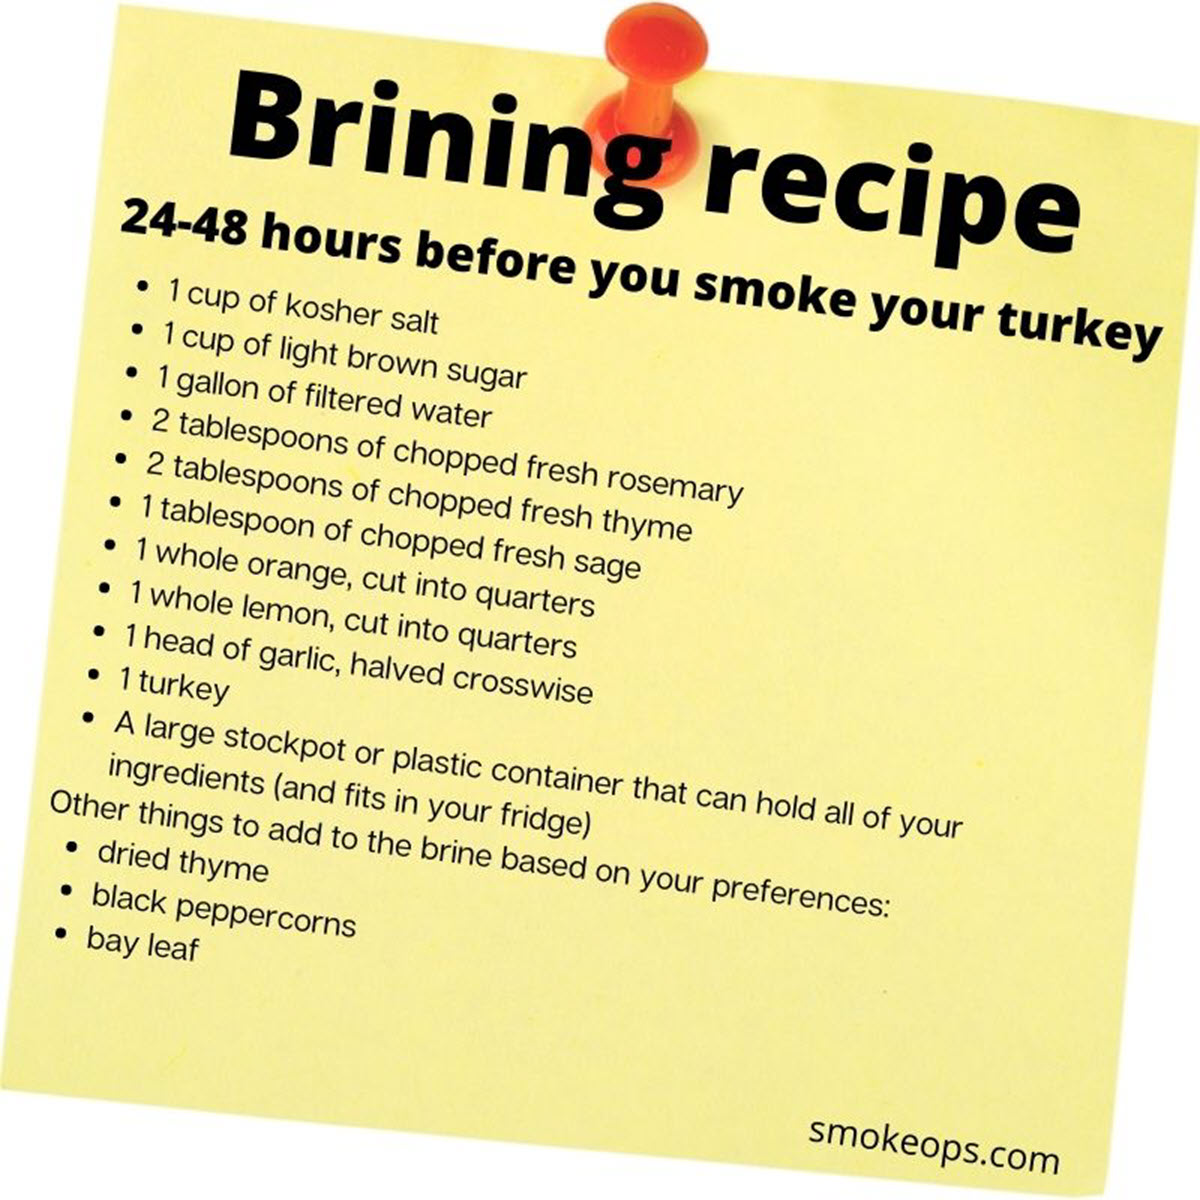 Smoked turkey - brining recipe